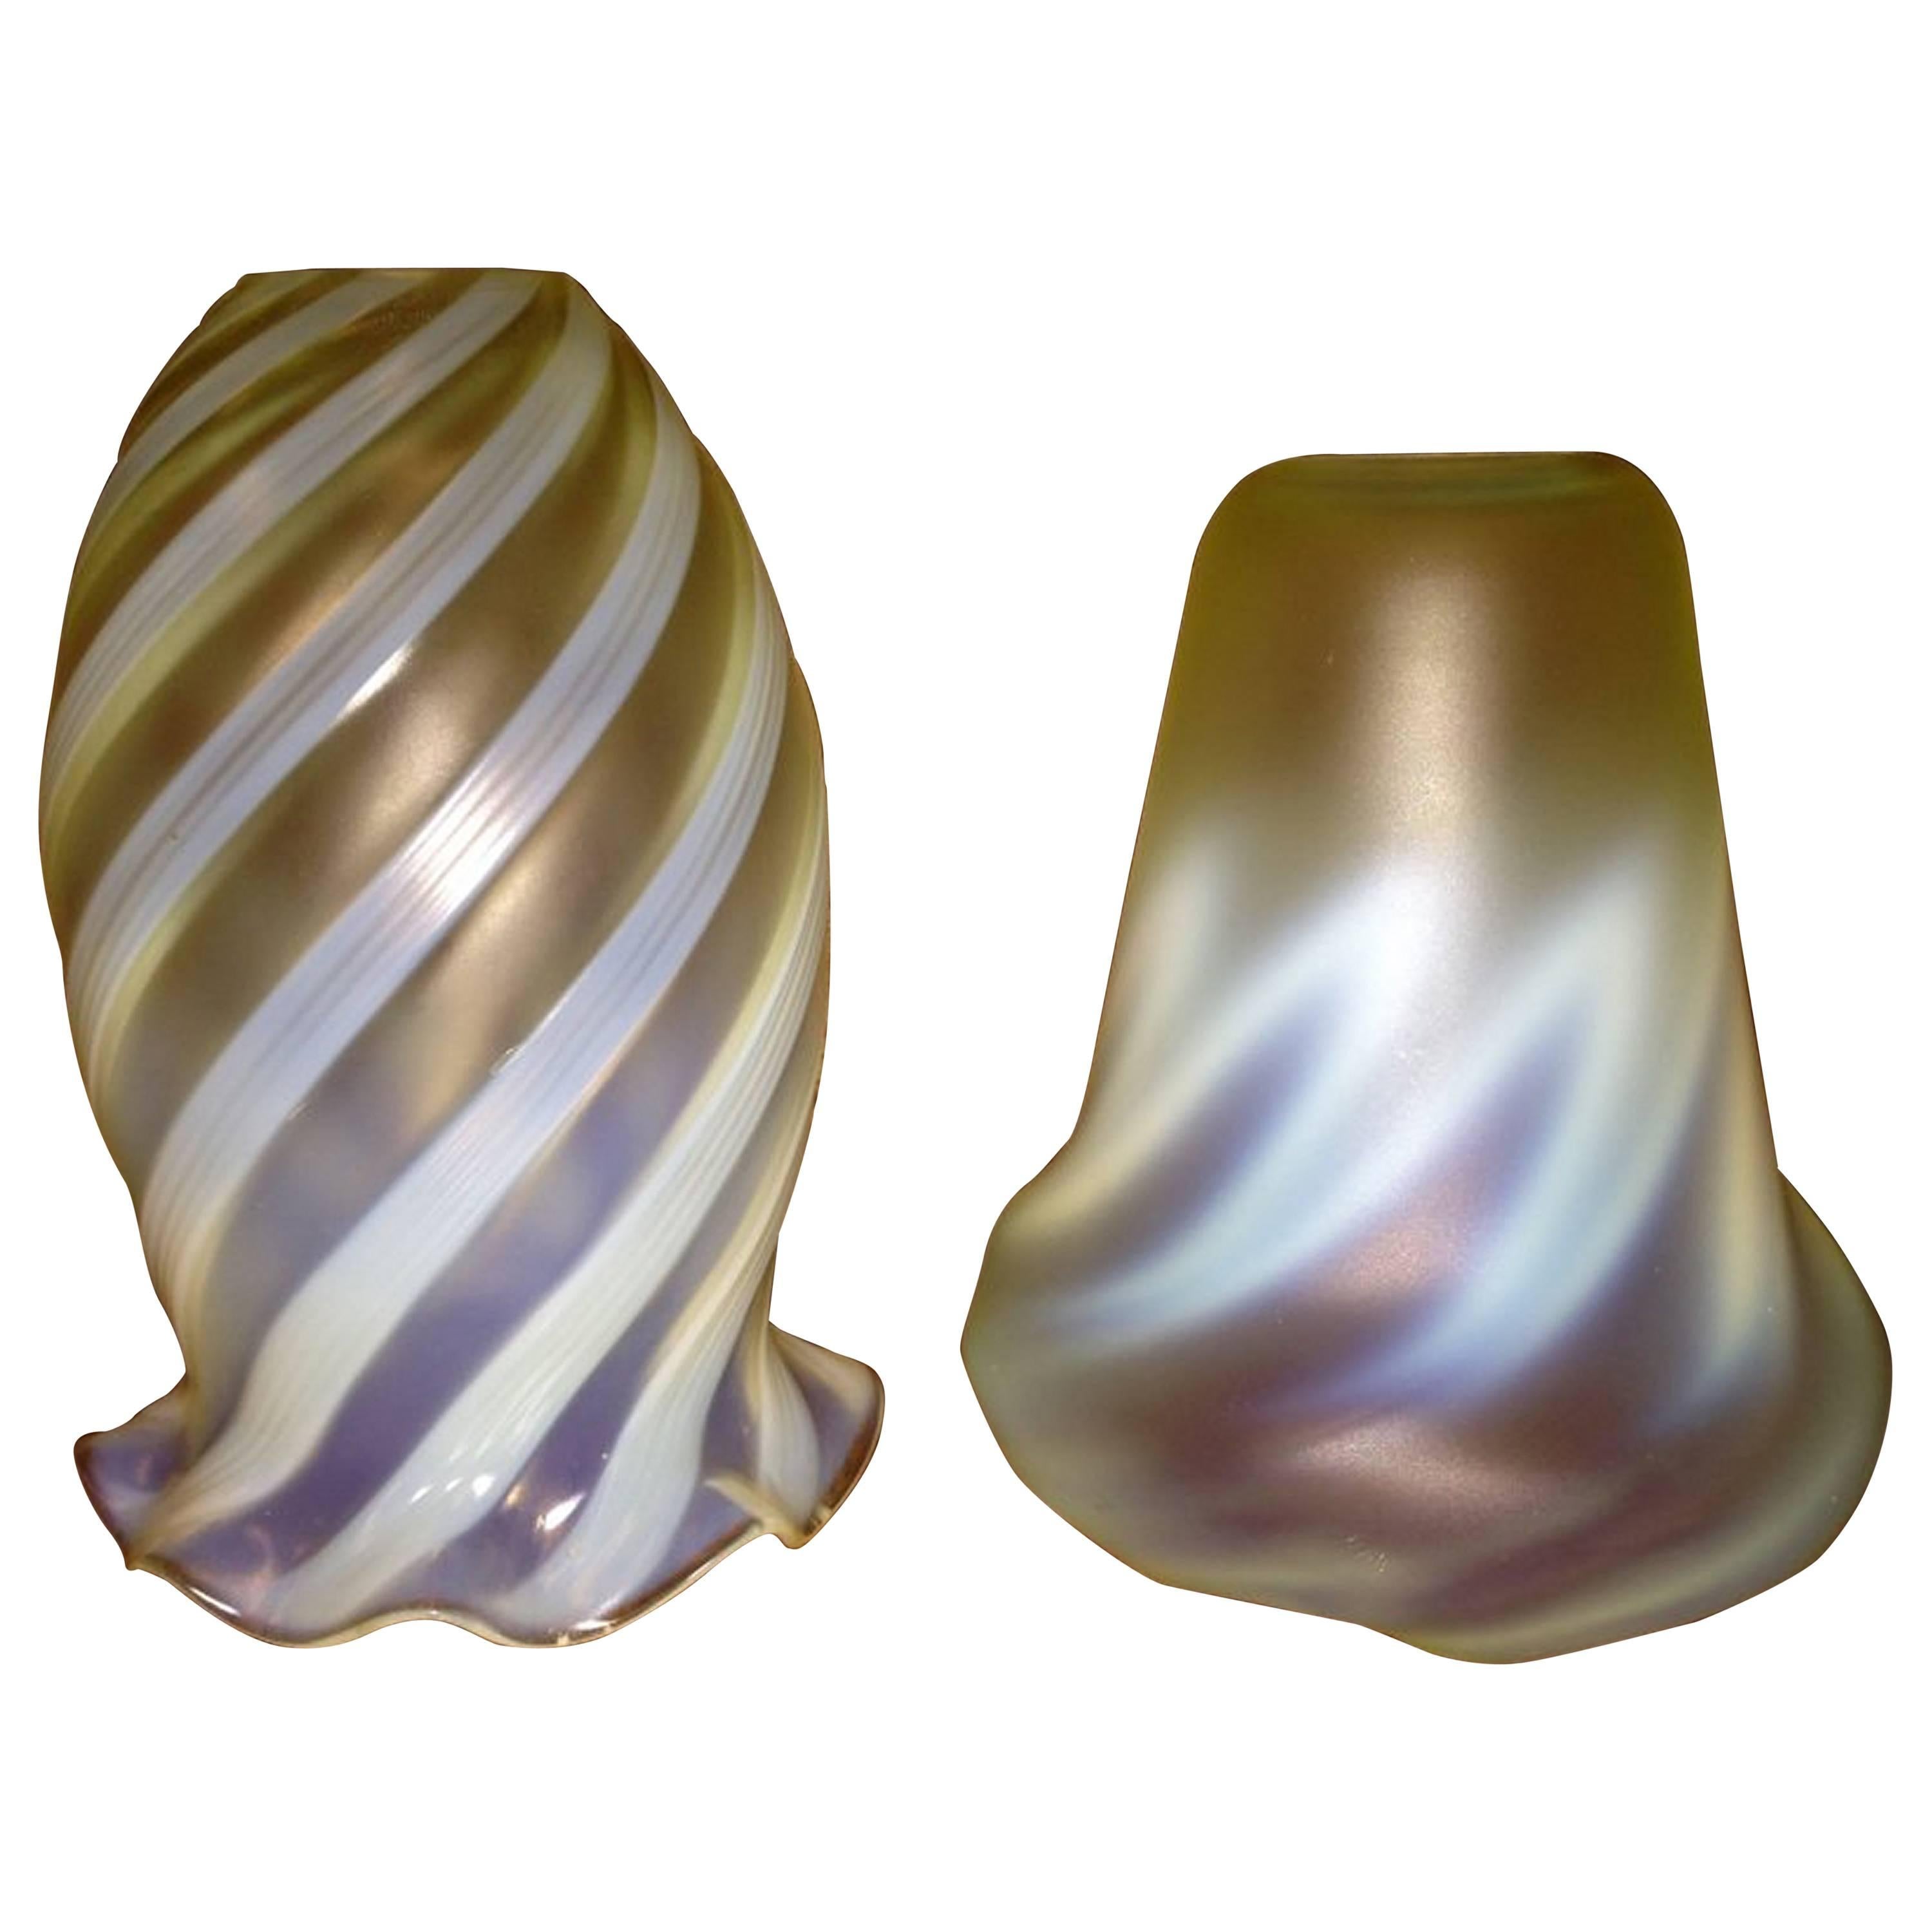 One Arts & Crafts Vaseline/Uranium Glass Shades, One Swirl, One Zigzag Patterned